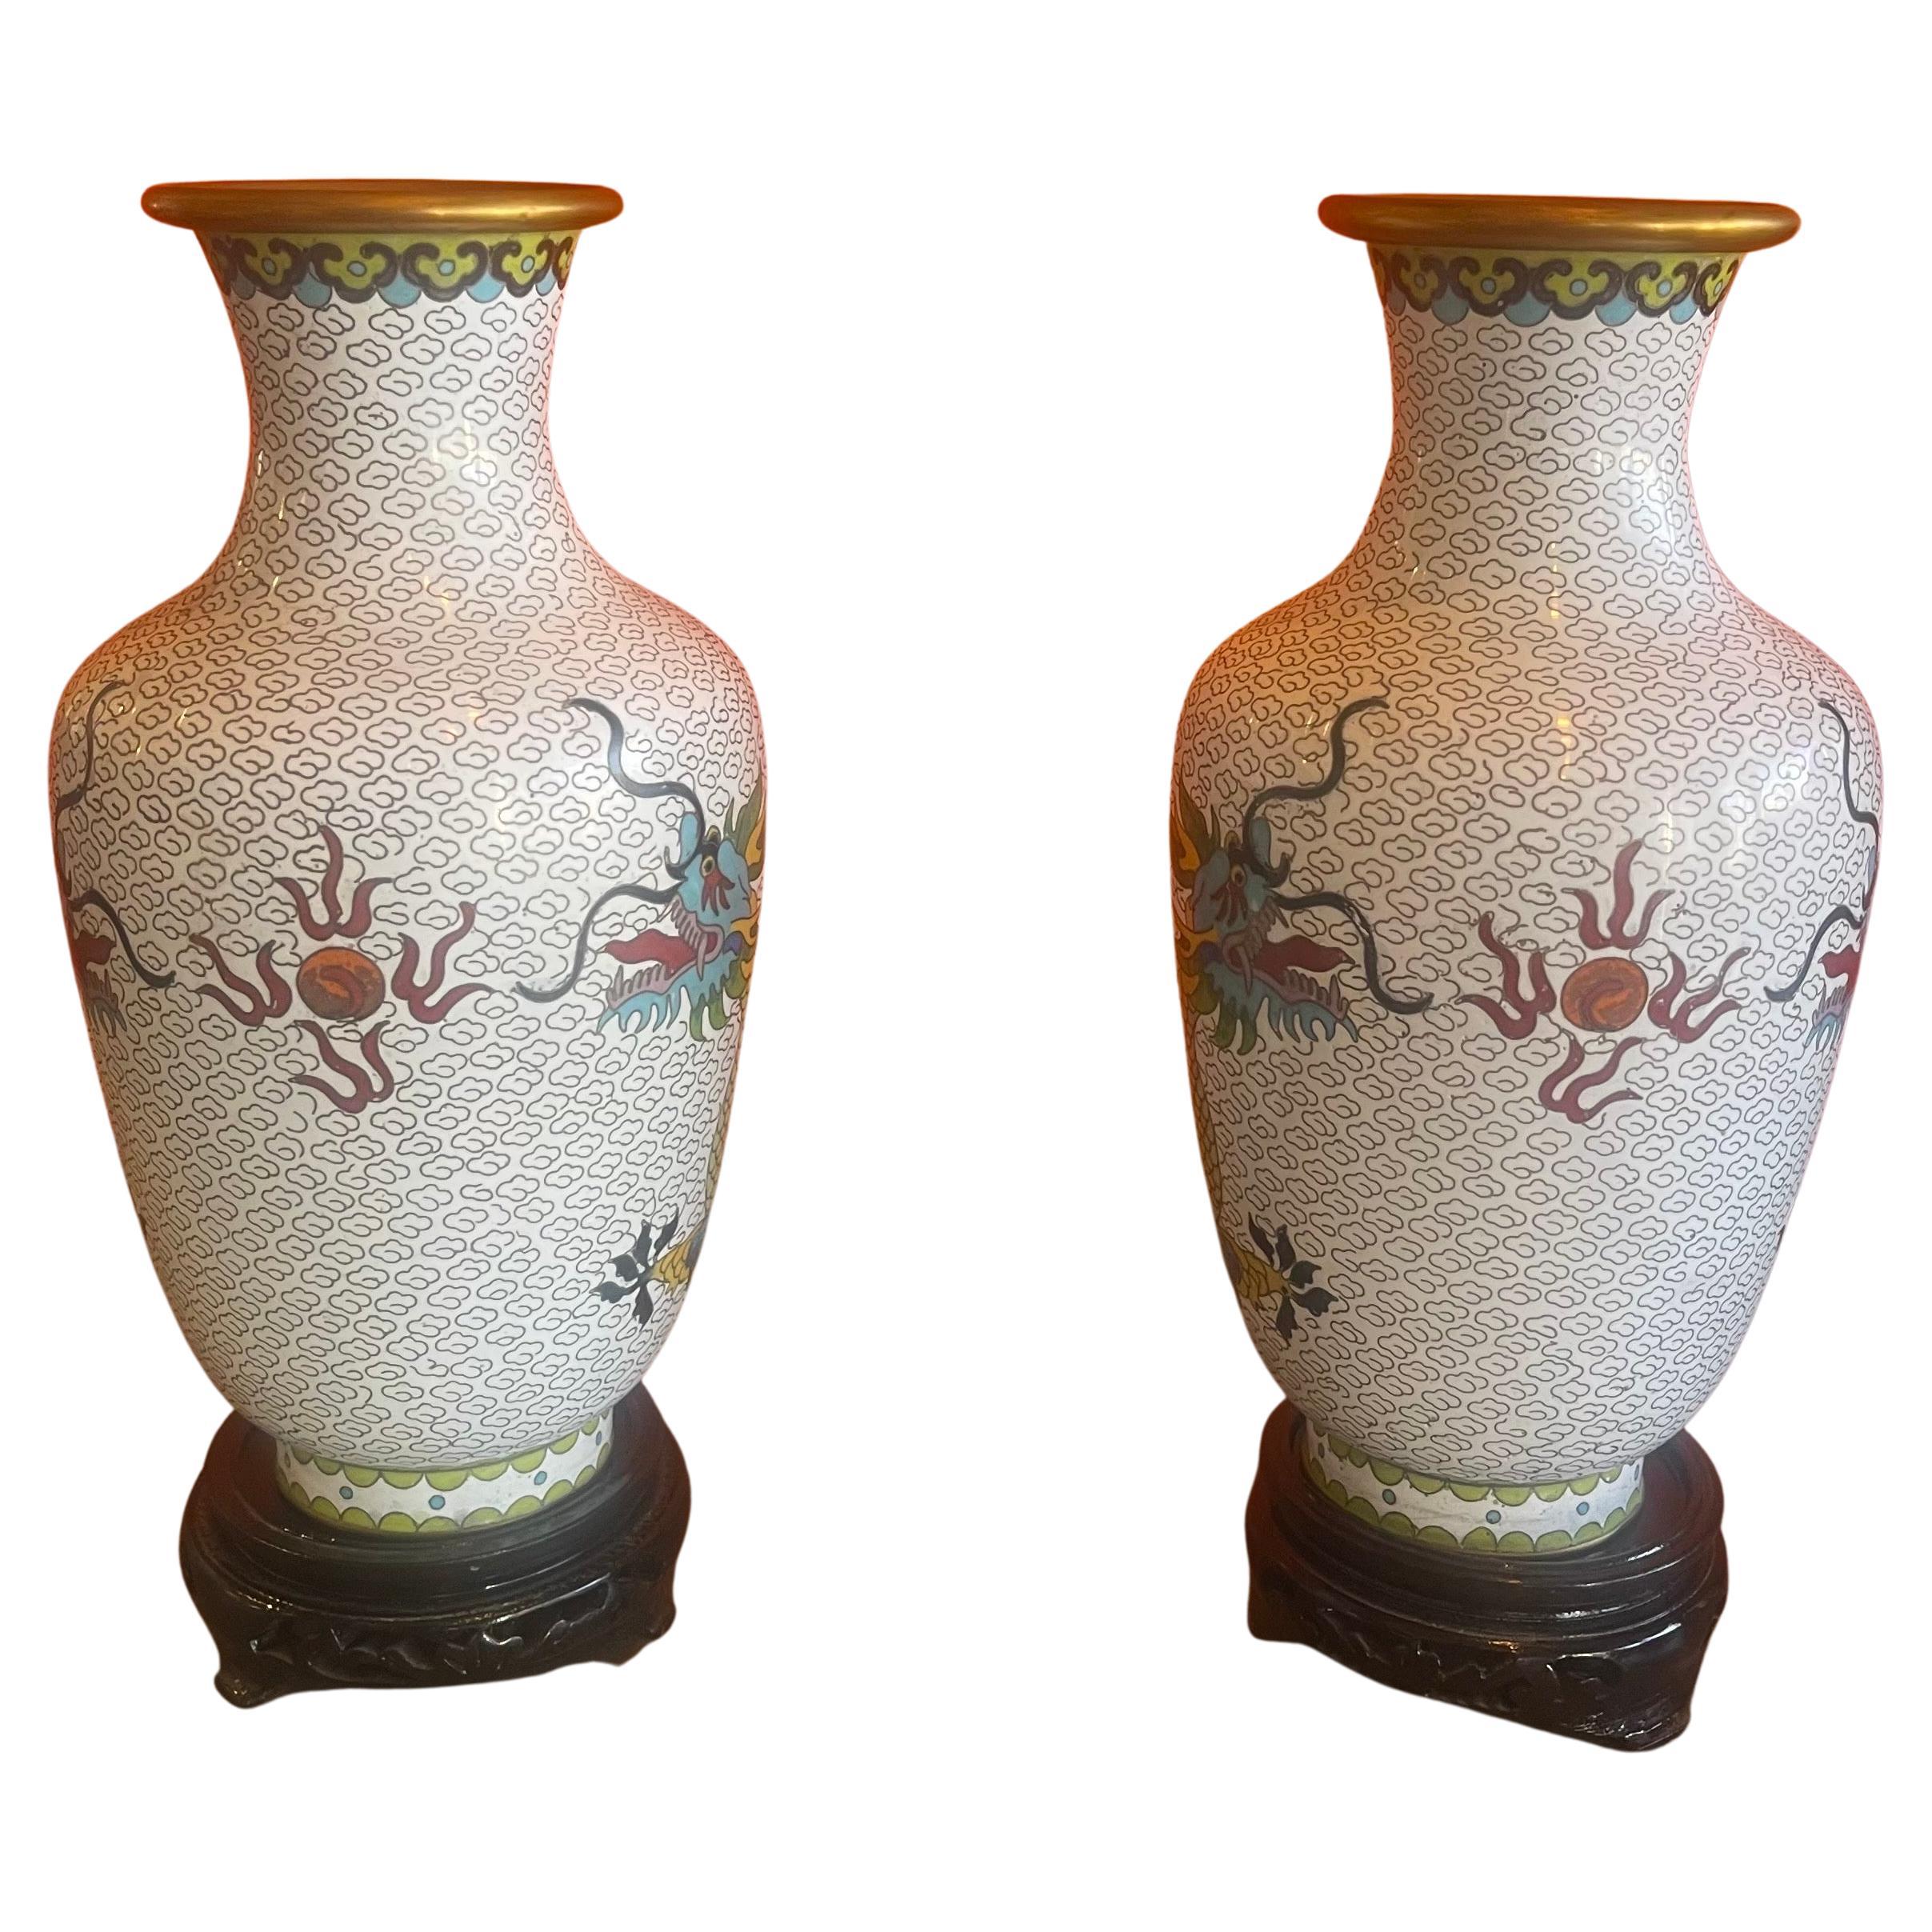 Une belle paire de vases en cloisonné chinois avec miroir et motif de dragon, vers les années 1960. Les vases sont en très bon état et mesurent 5,25 